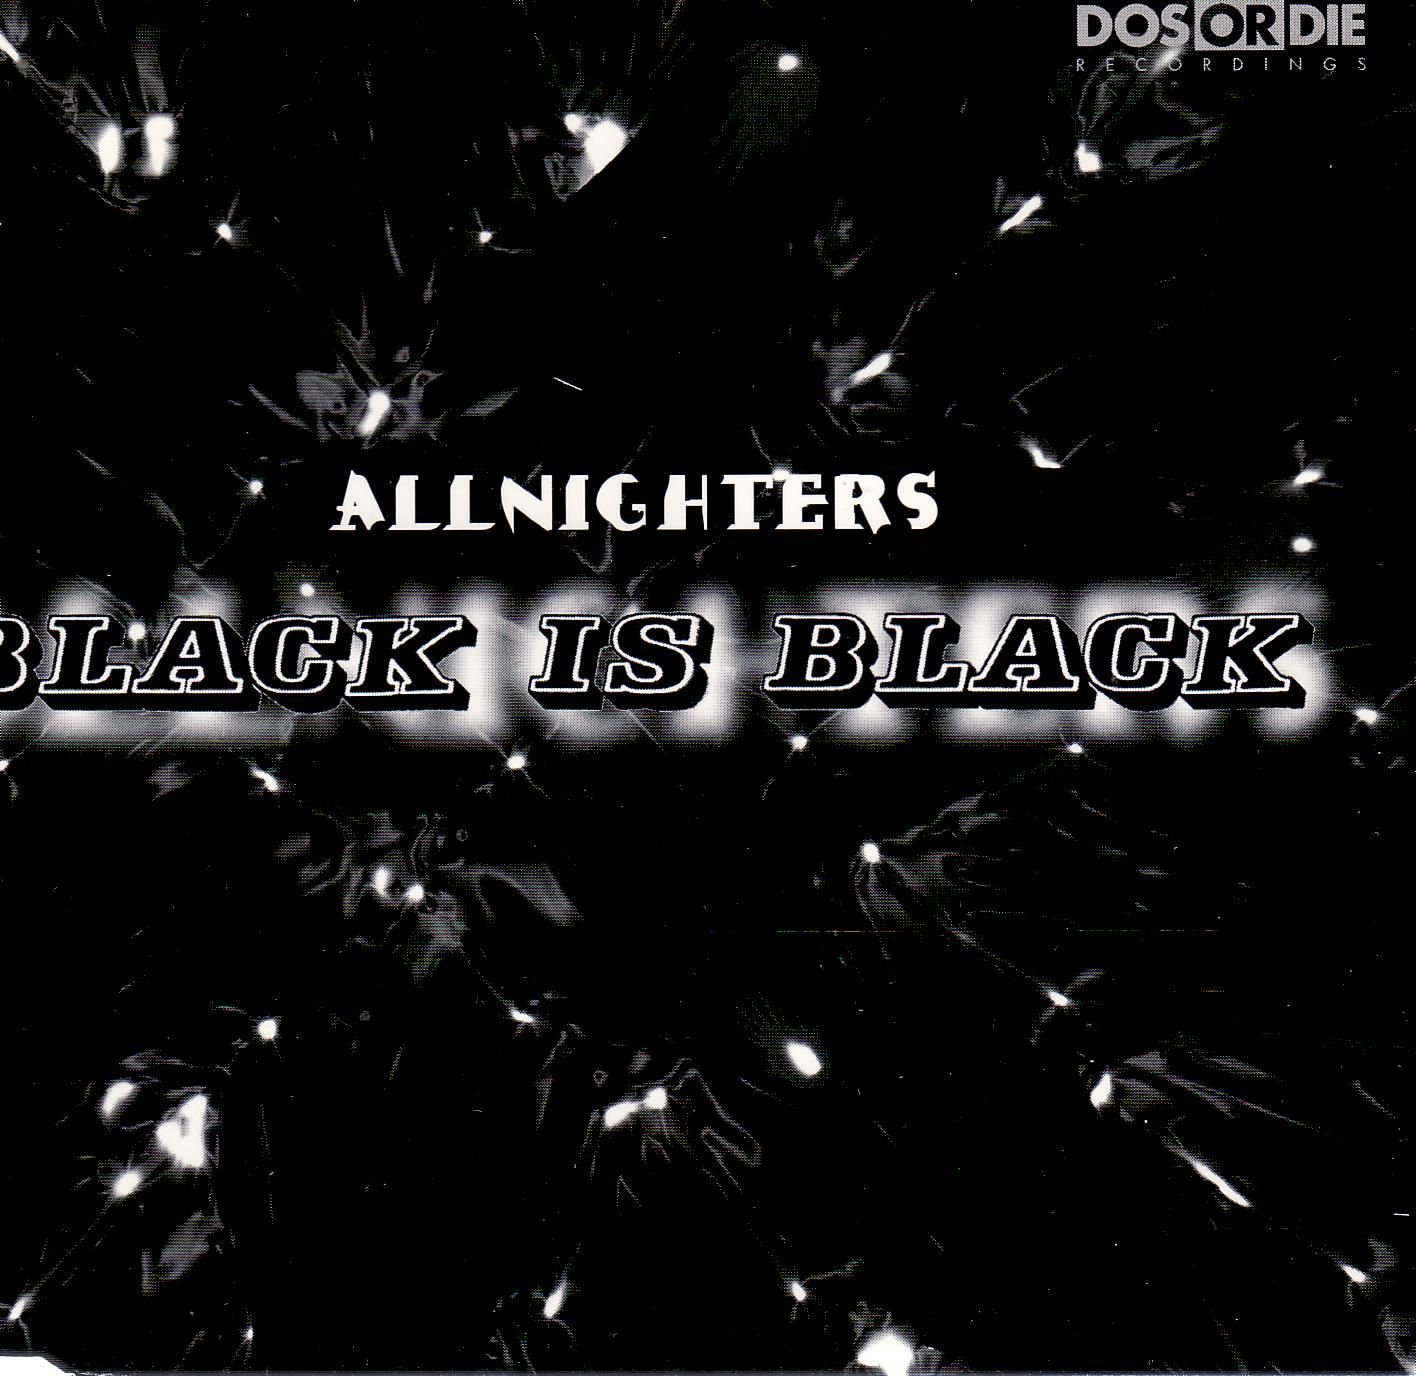 Блэк ис блэк. Black is Black. Black is Black группа. Обложка альбома la Belle epoque-Black is Black. Black is Black песня.